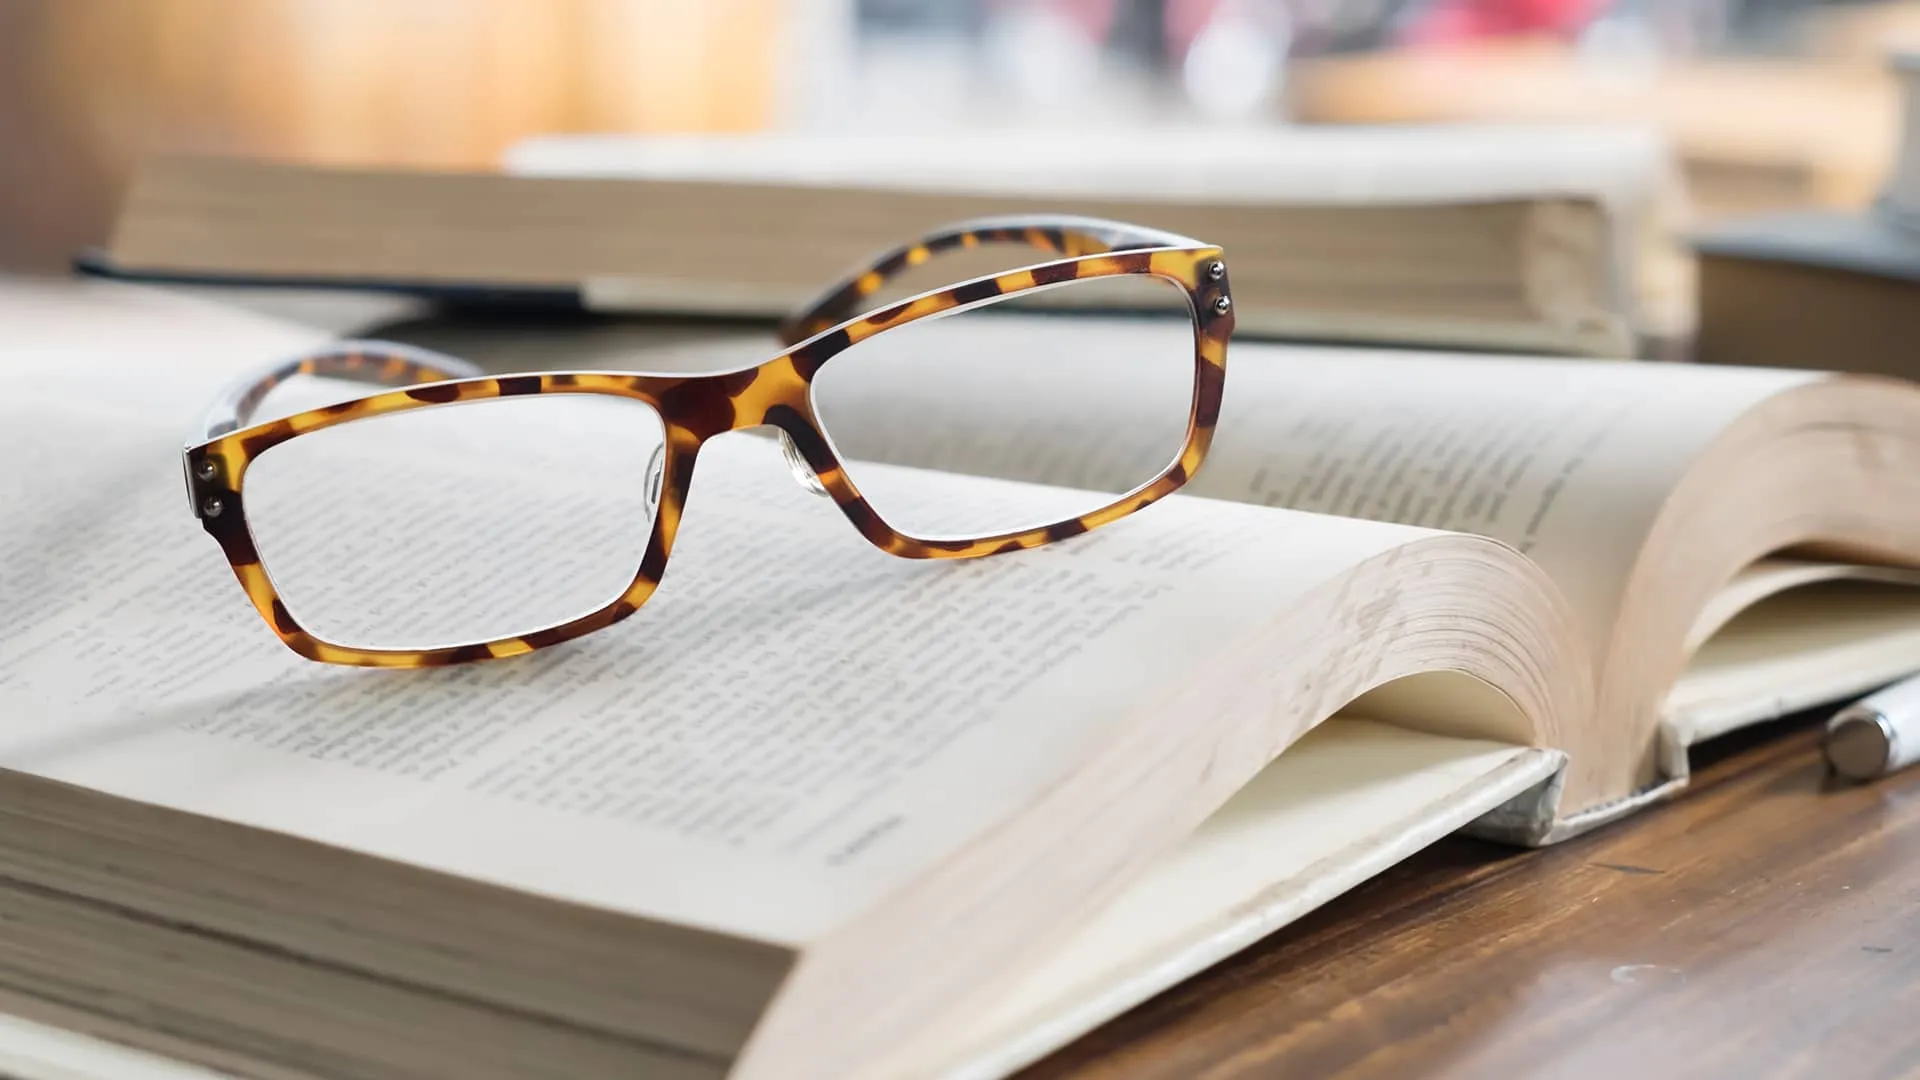 Para okularów spoczywająca na grubej książce przedstawiającej "prawo najmu", symbolizująca głębsze zrozumienie tematu.